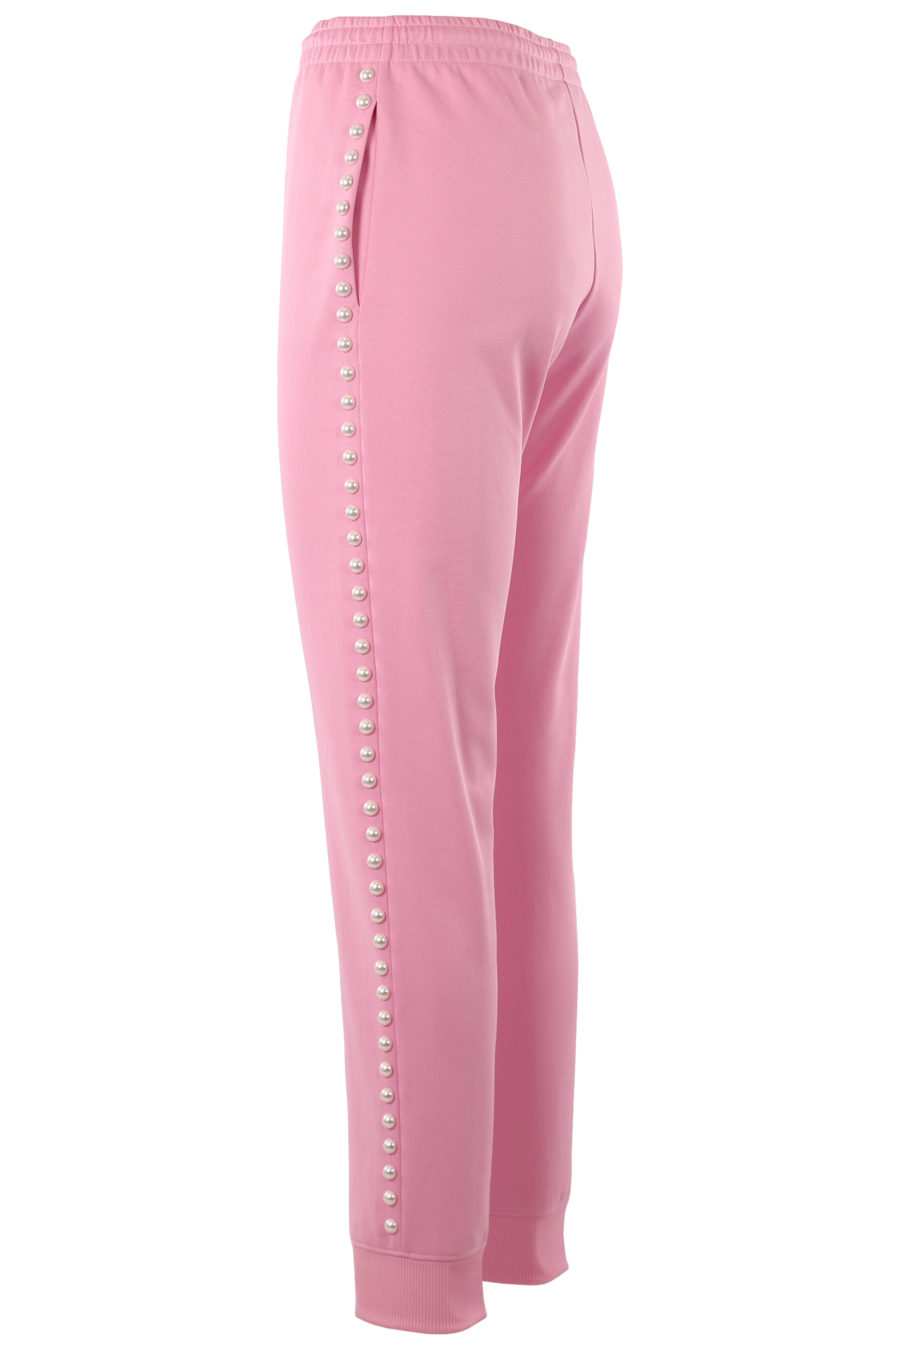 Pantalón de color rosa con perlas - 6fd4402ece5cdb7bb8da211183e247ee18adf47e